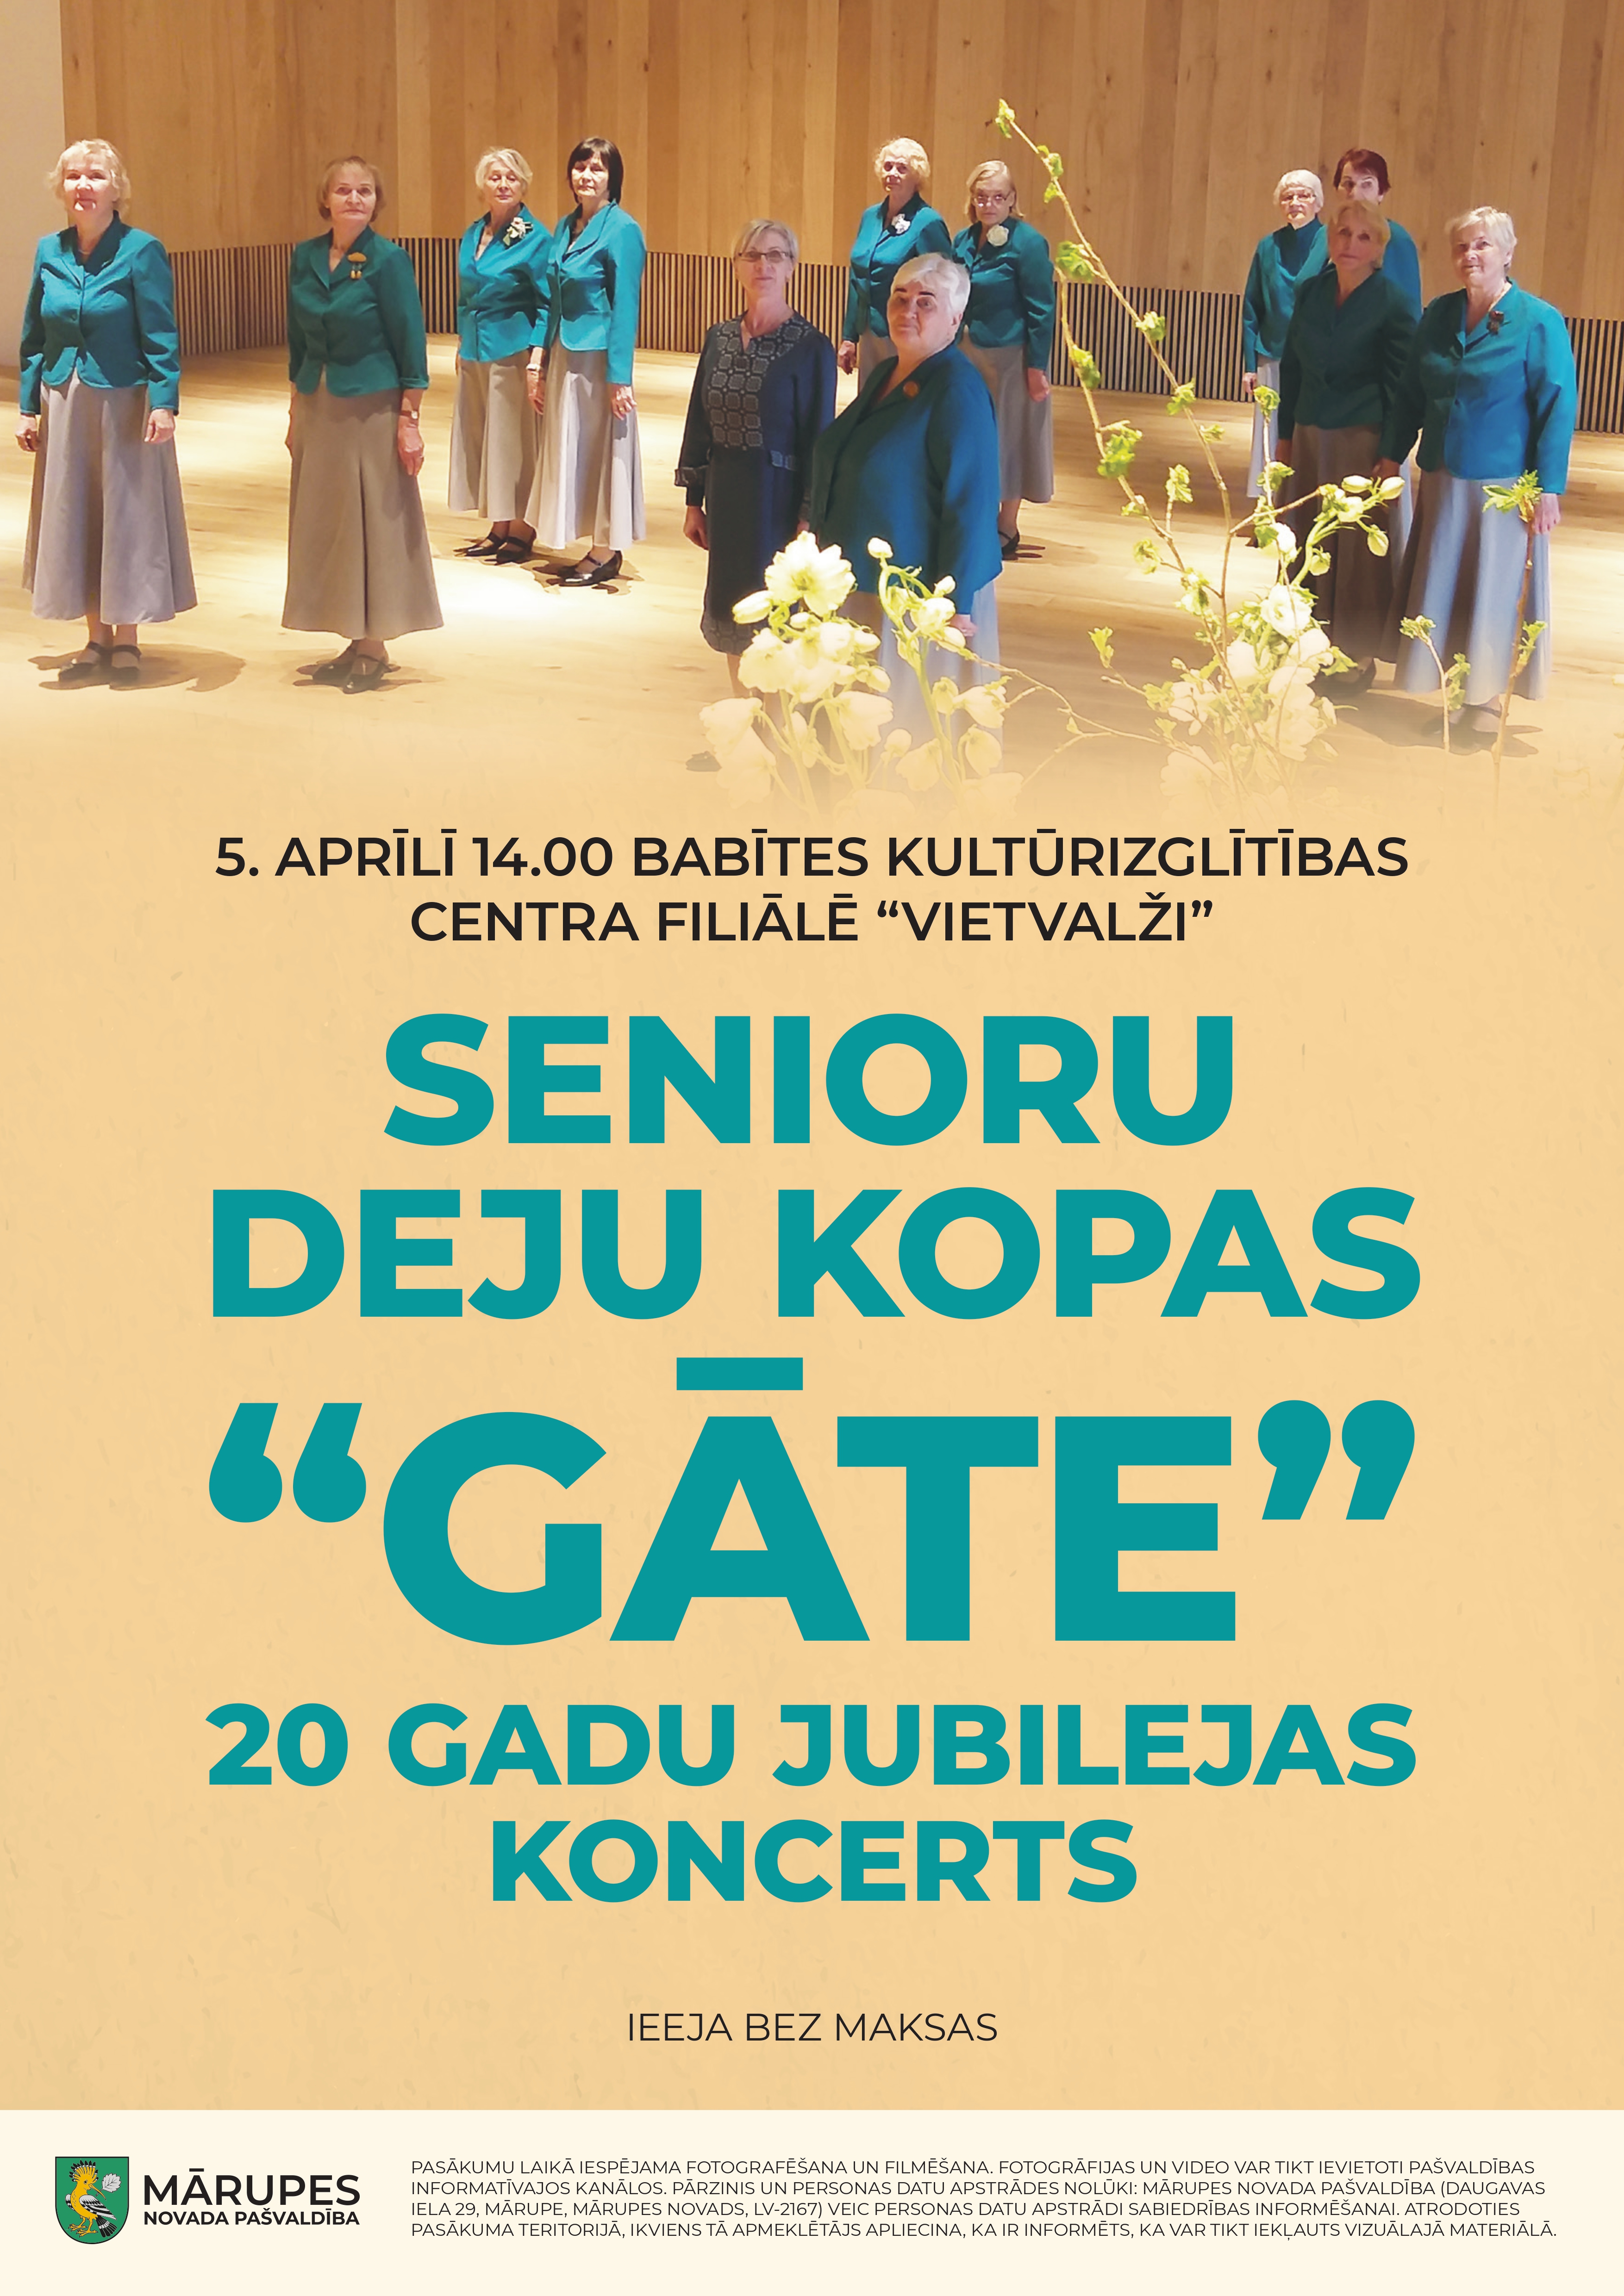 Senioru deju kolektīva dāmas zilos kostīmos un gaiša fona informatīvs plakāts ar tekstu par kolektīva koncertu